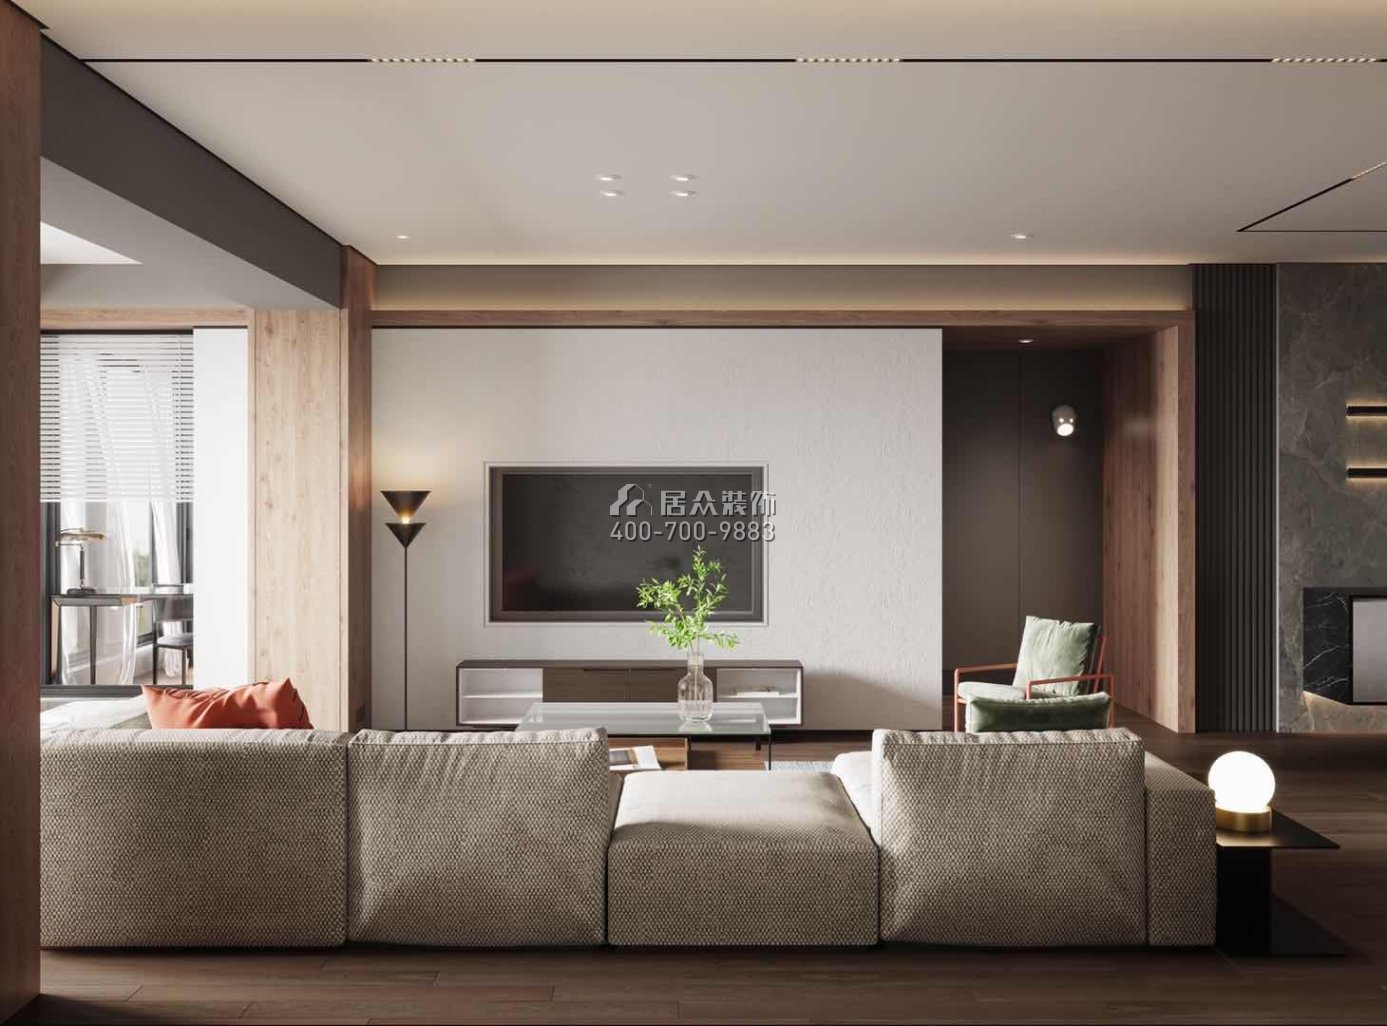 中建江山壹號197平方米現代簡約風格平層戶型客廳裝修效果圖